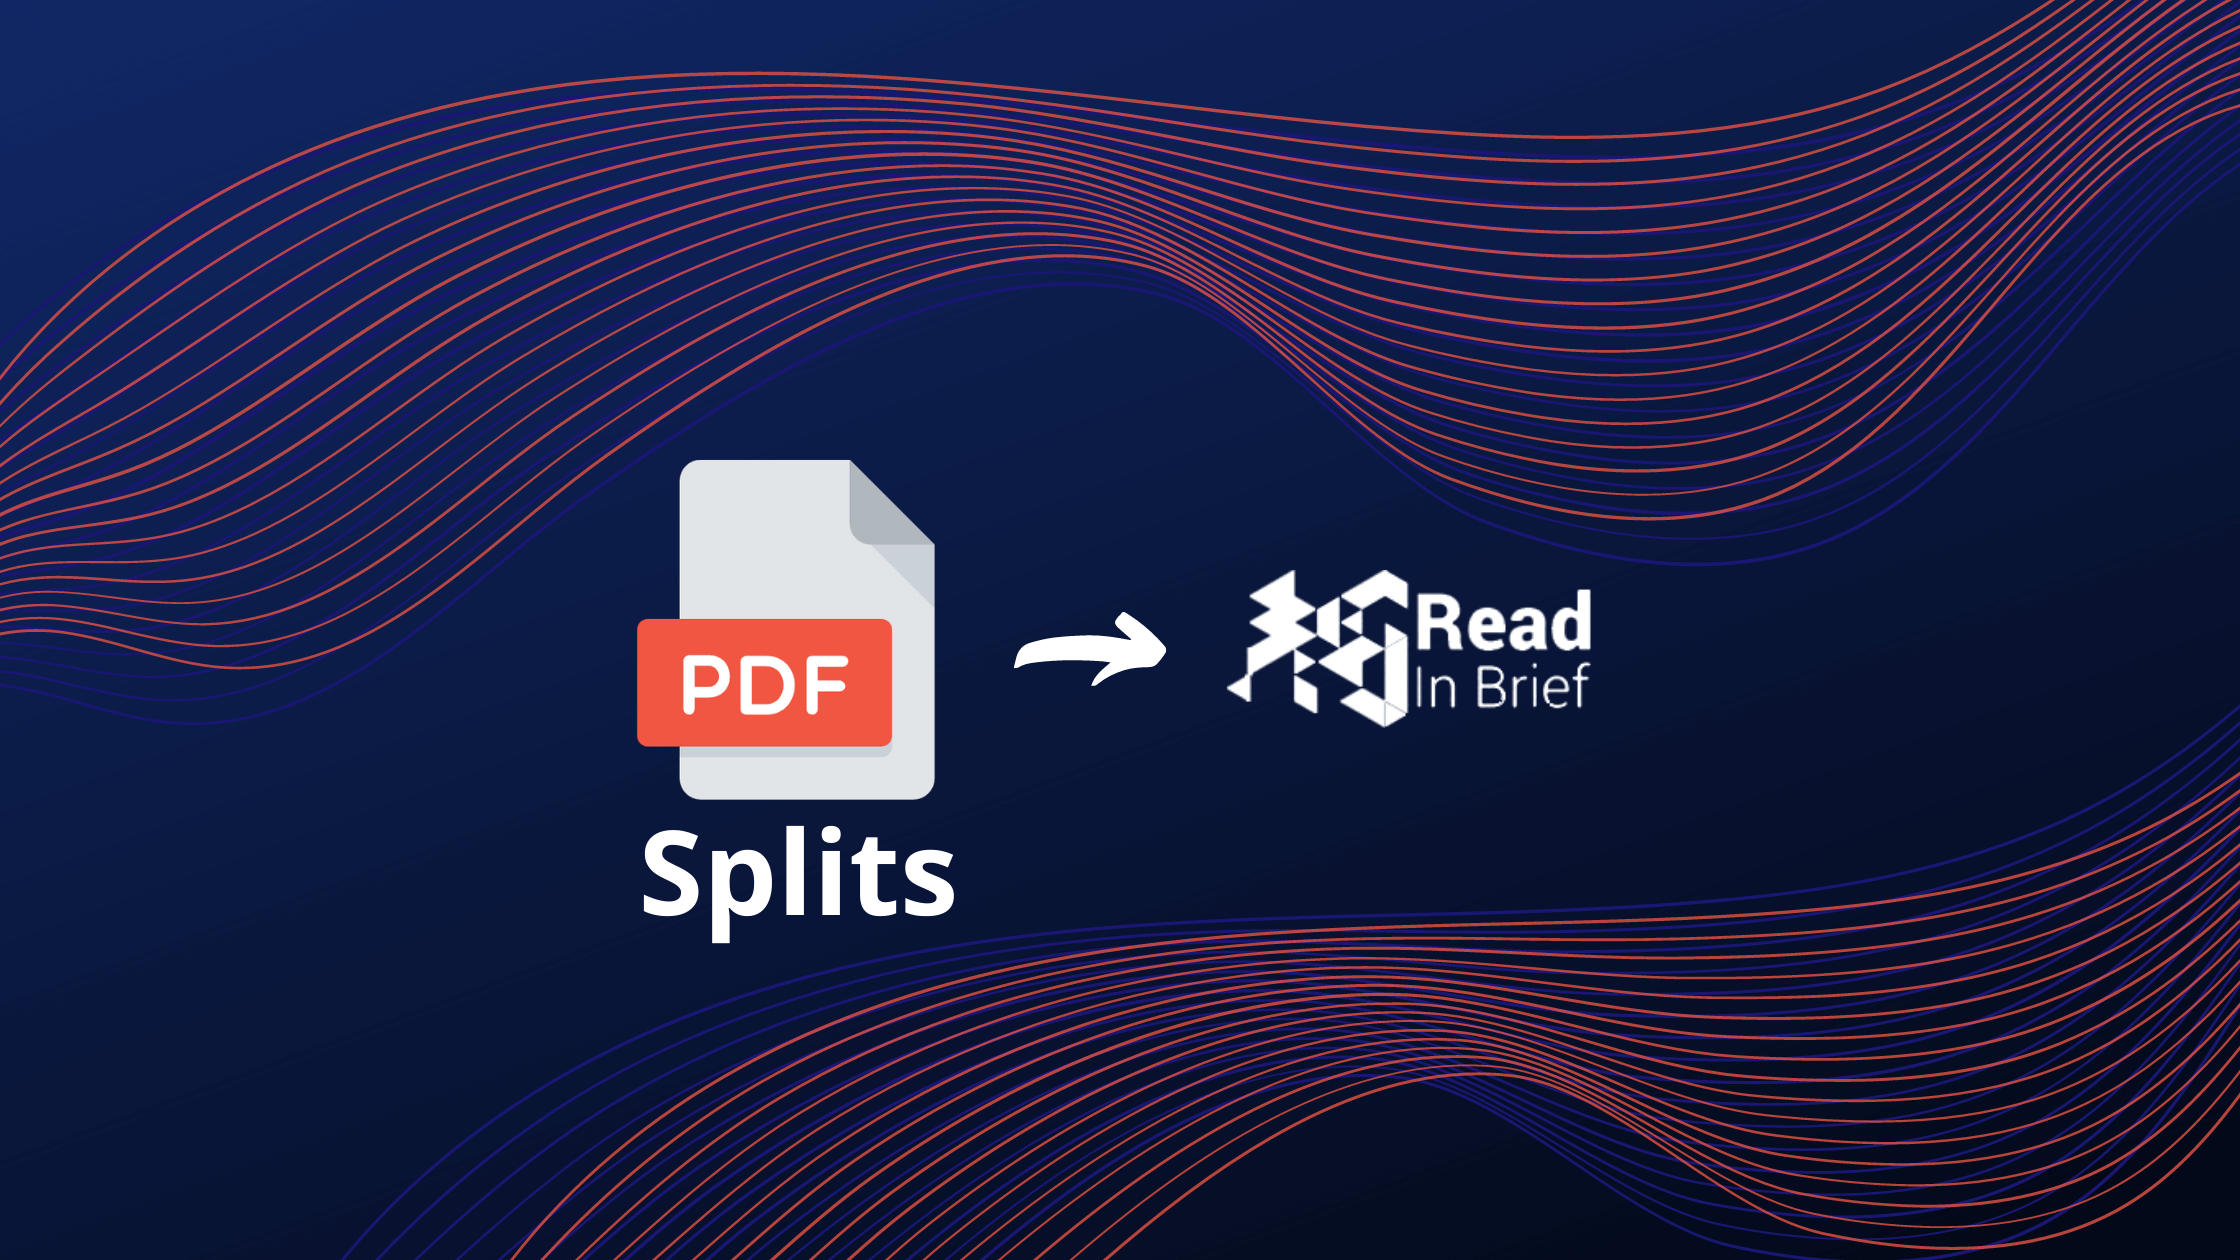 Split PDF